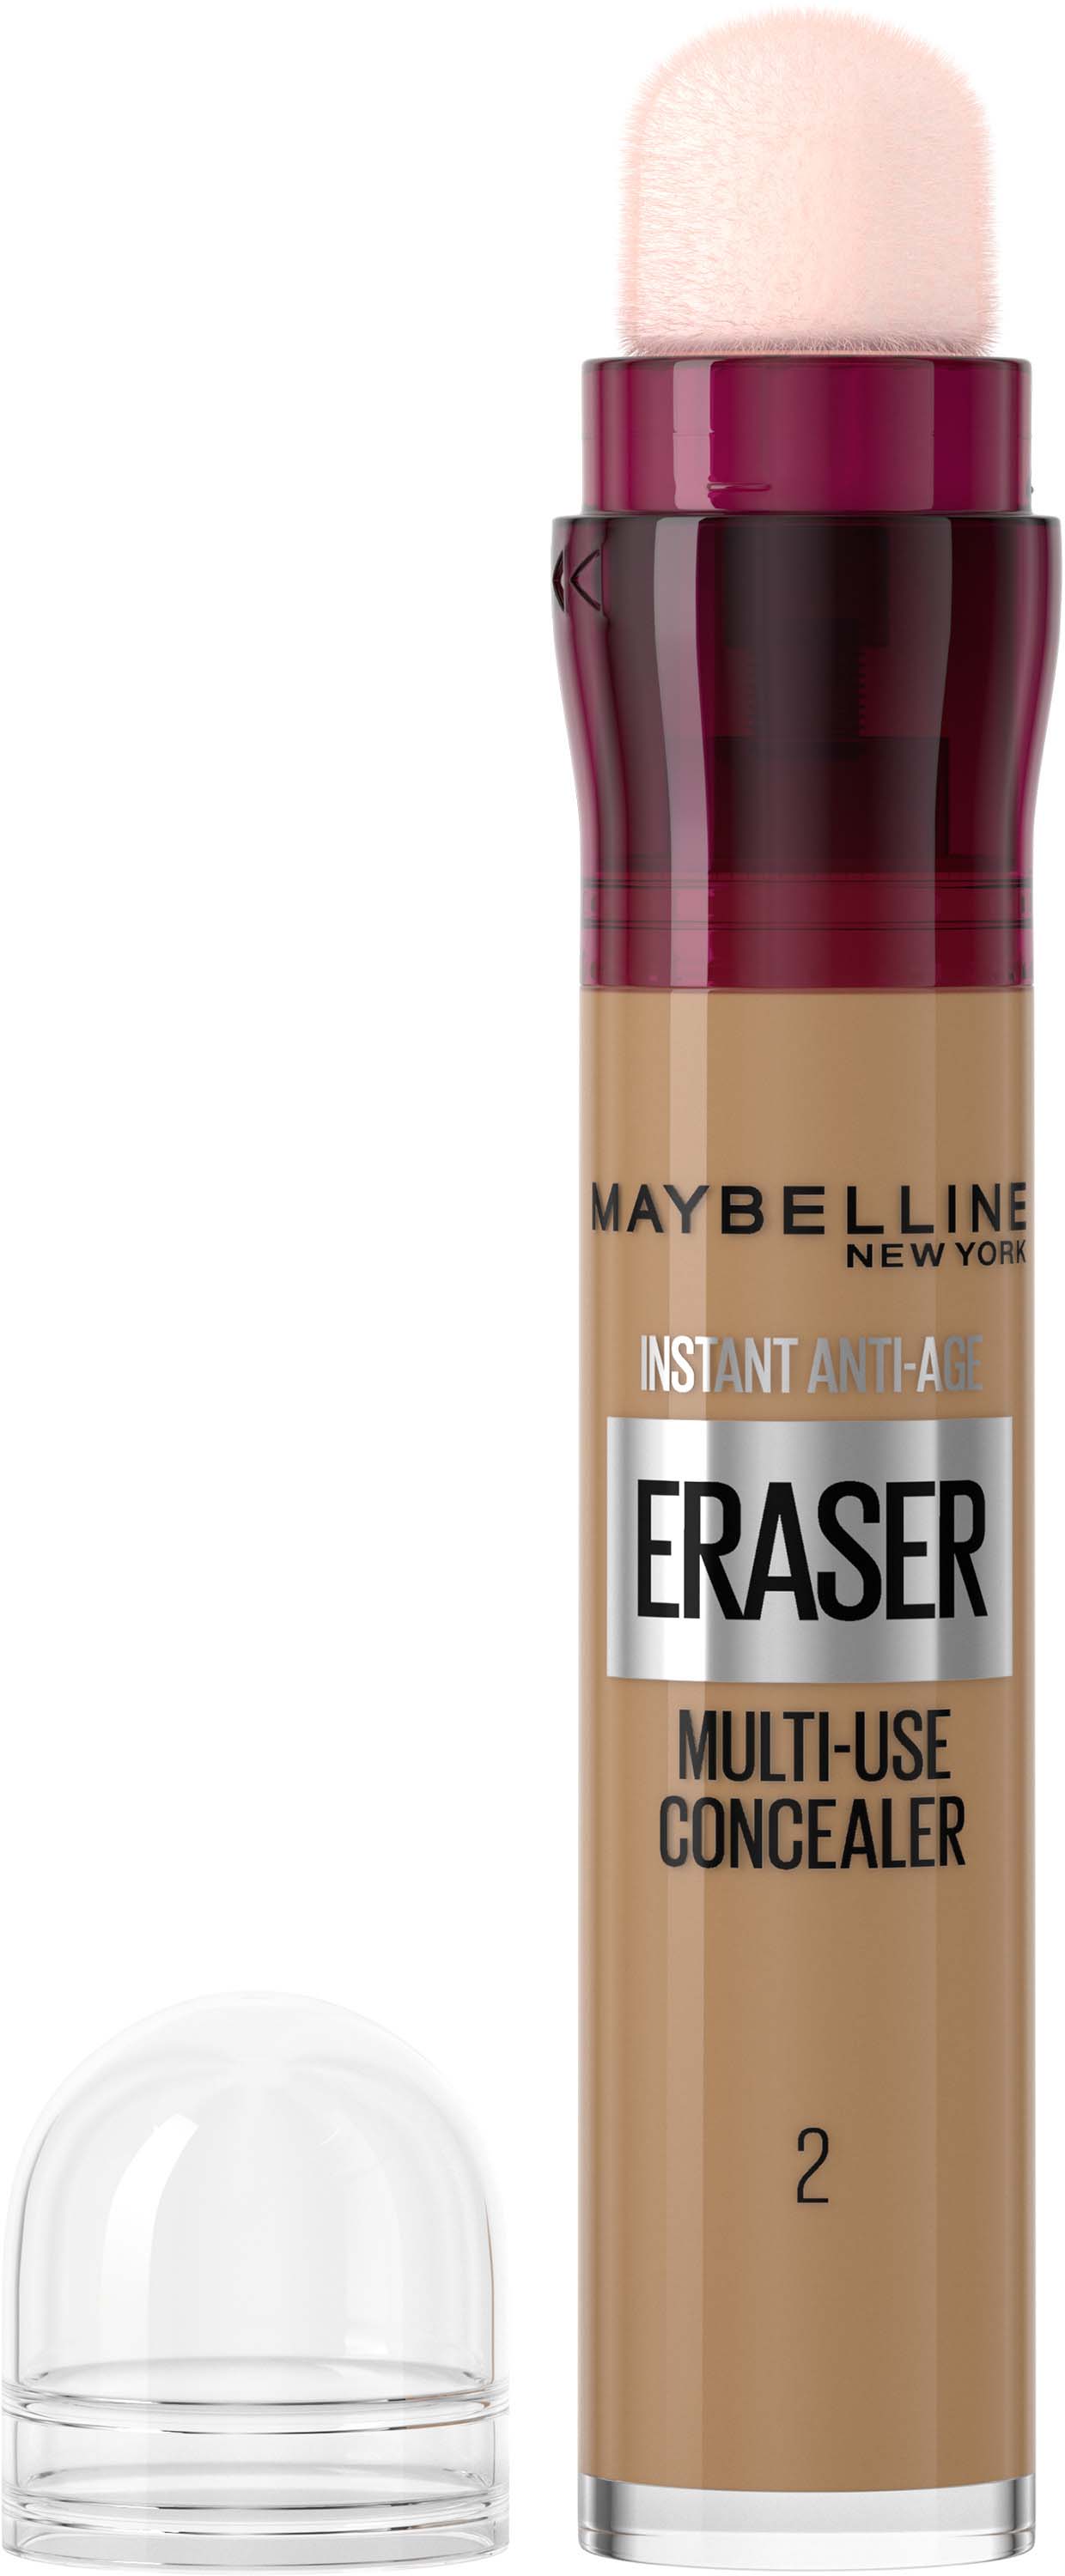 Eraser Concealer Multi-Use Eraser 0 Maybelline Instant Anti-Age Ivory New York